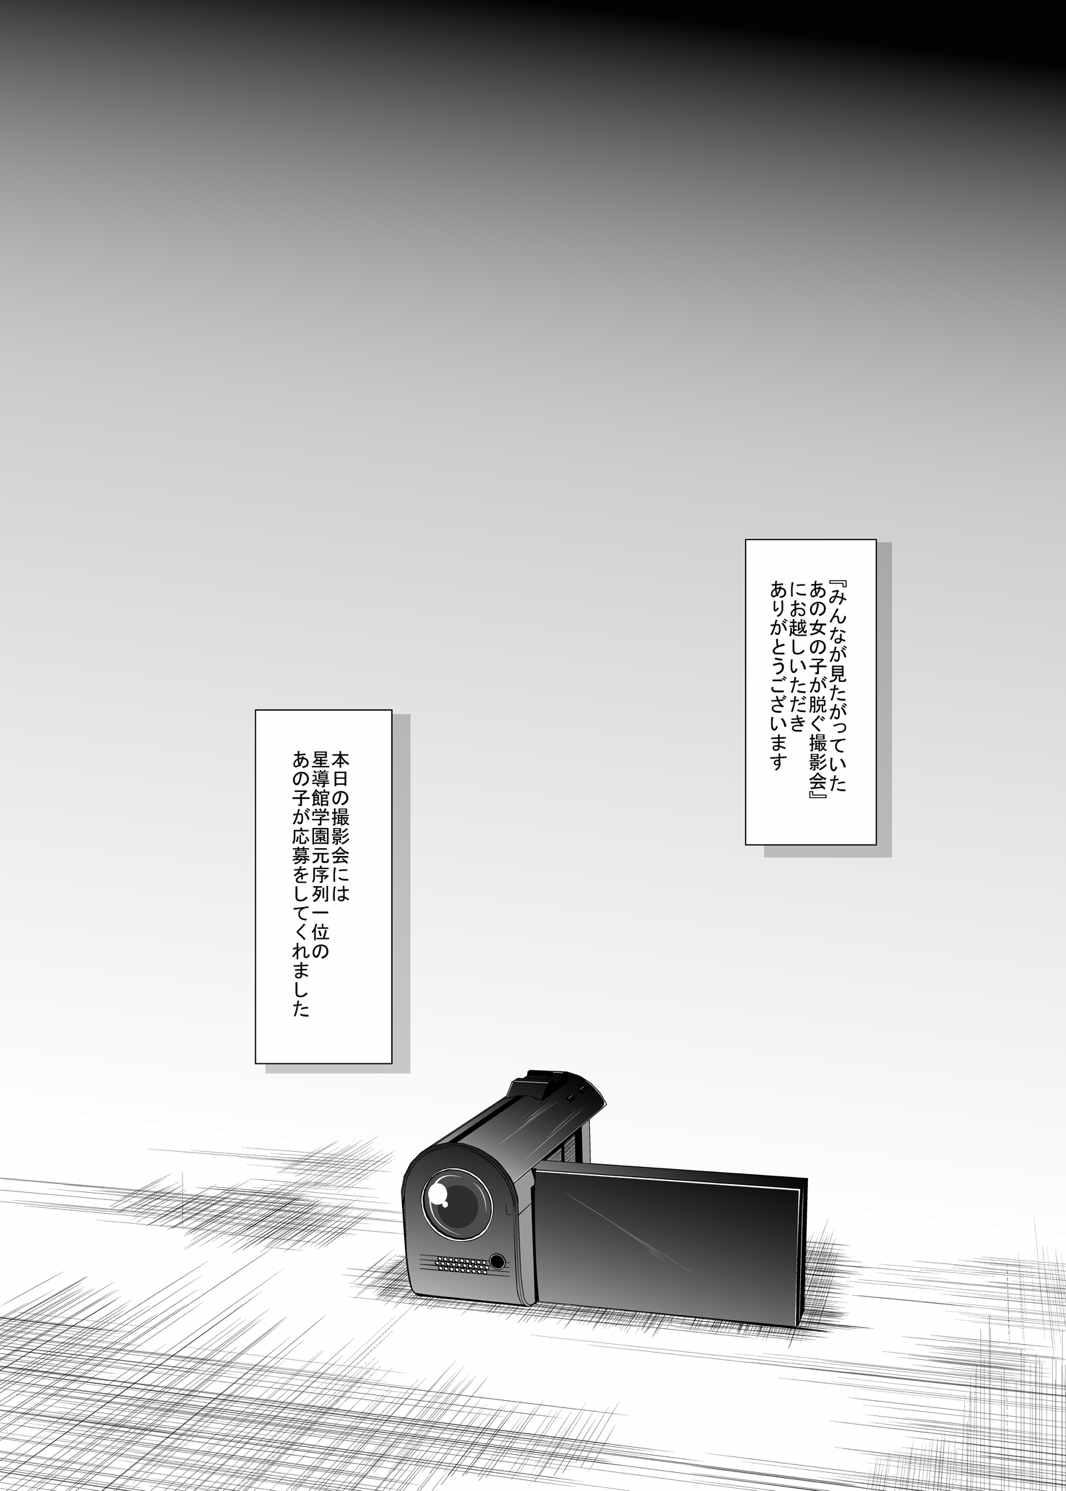 Livecam Hajimete no H na Satsuei-kai - Gakusen toshi asterisk Bubble - Page 3